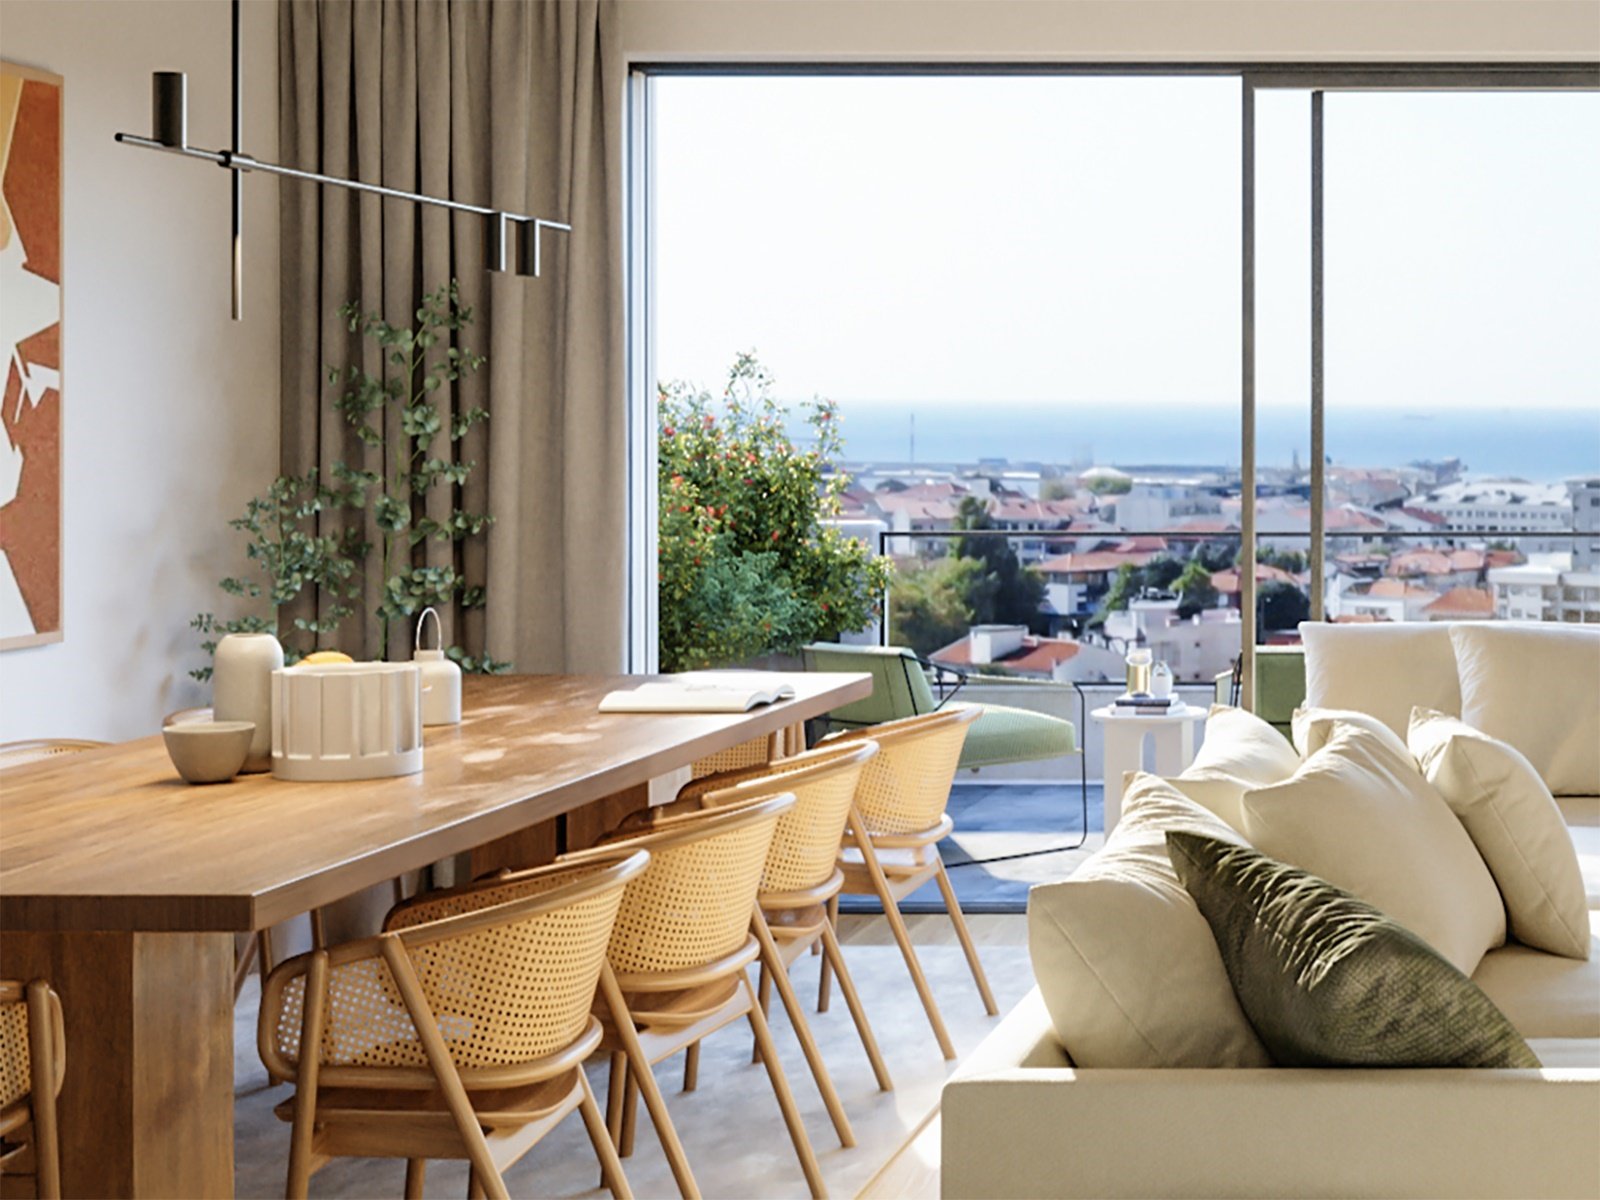 1 bedroom apartment with balcony in new development Matosinhos 3666888185